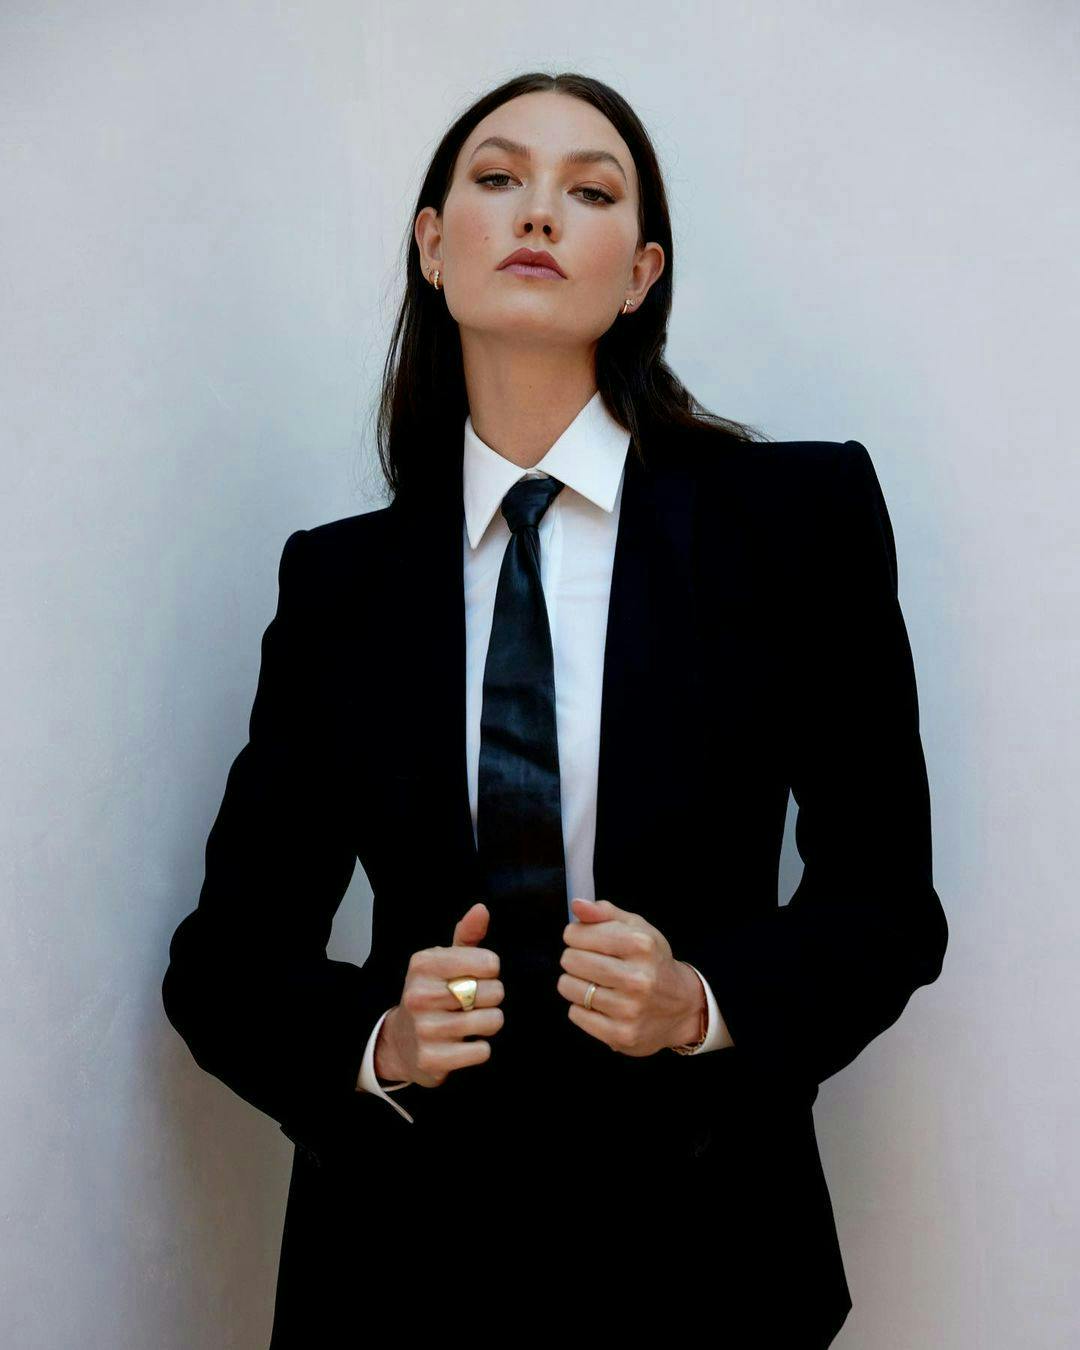 formal wear suit blazer coat jacket tie adult female person woman